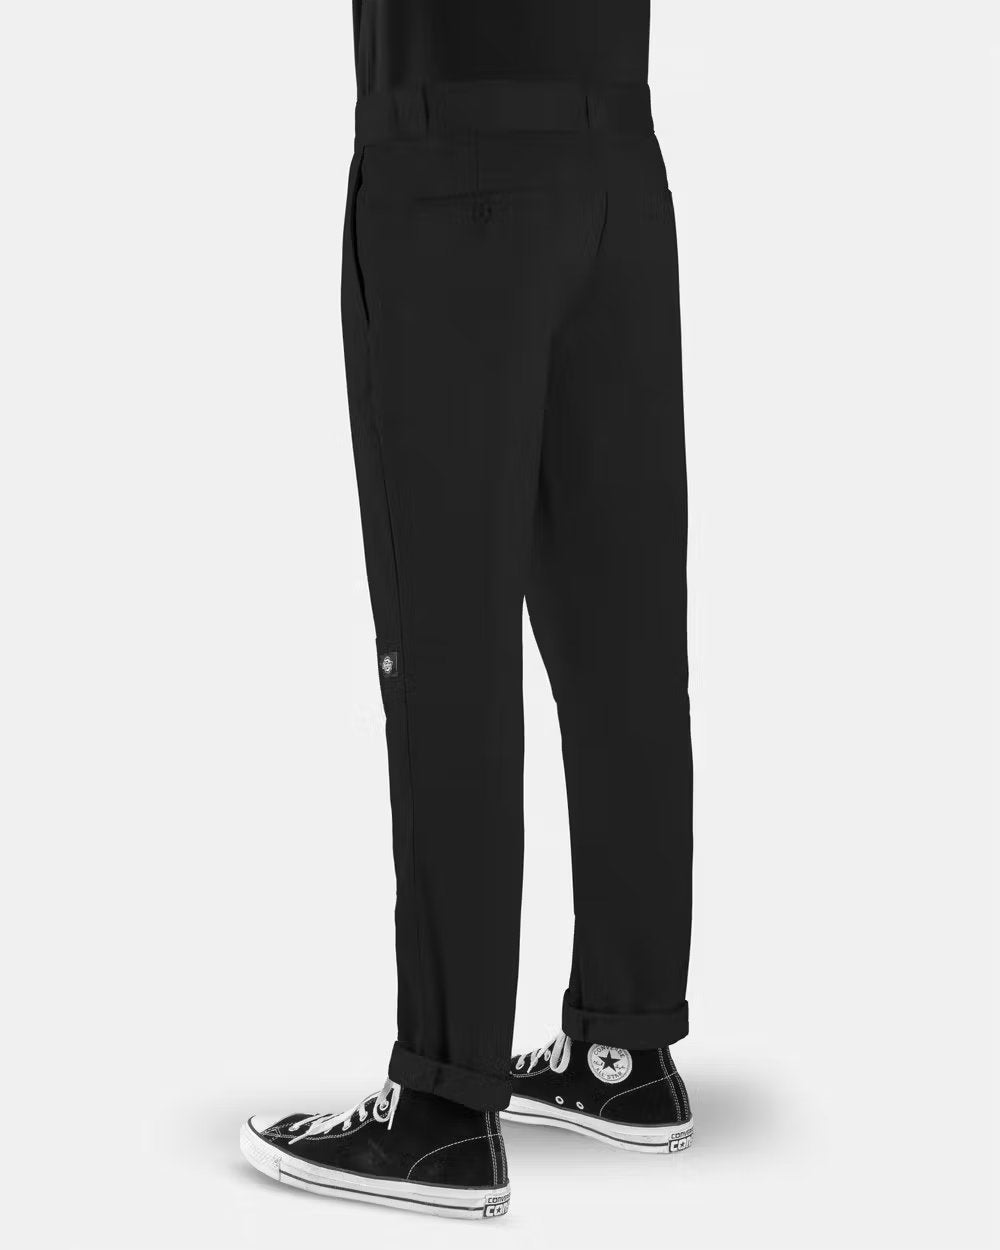 DICKIES 918 Slim Fit Double Knee Pants - Black - VENUE.